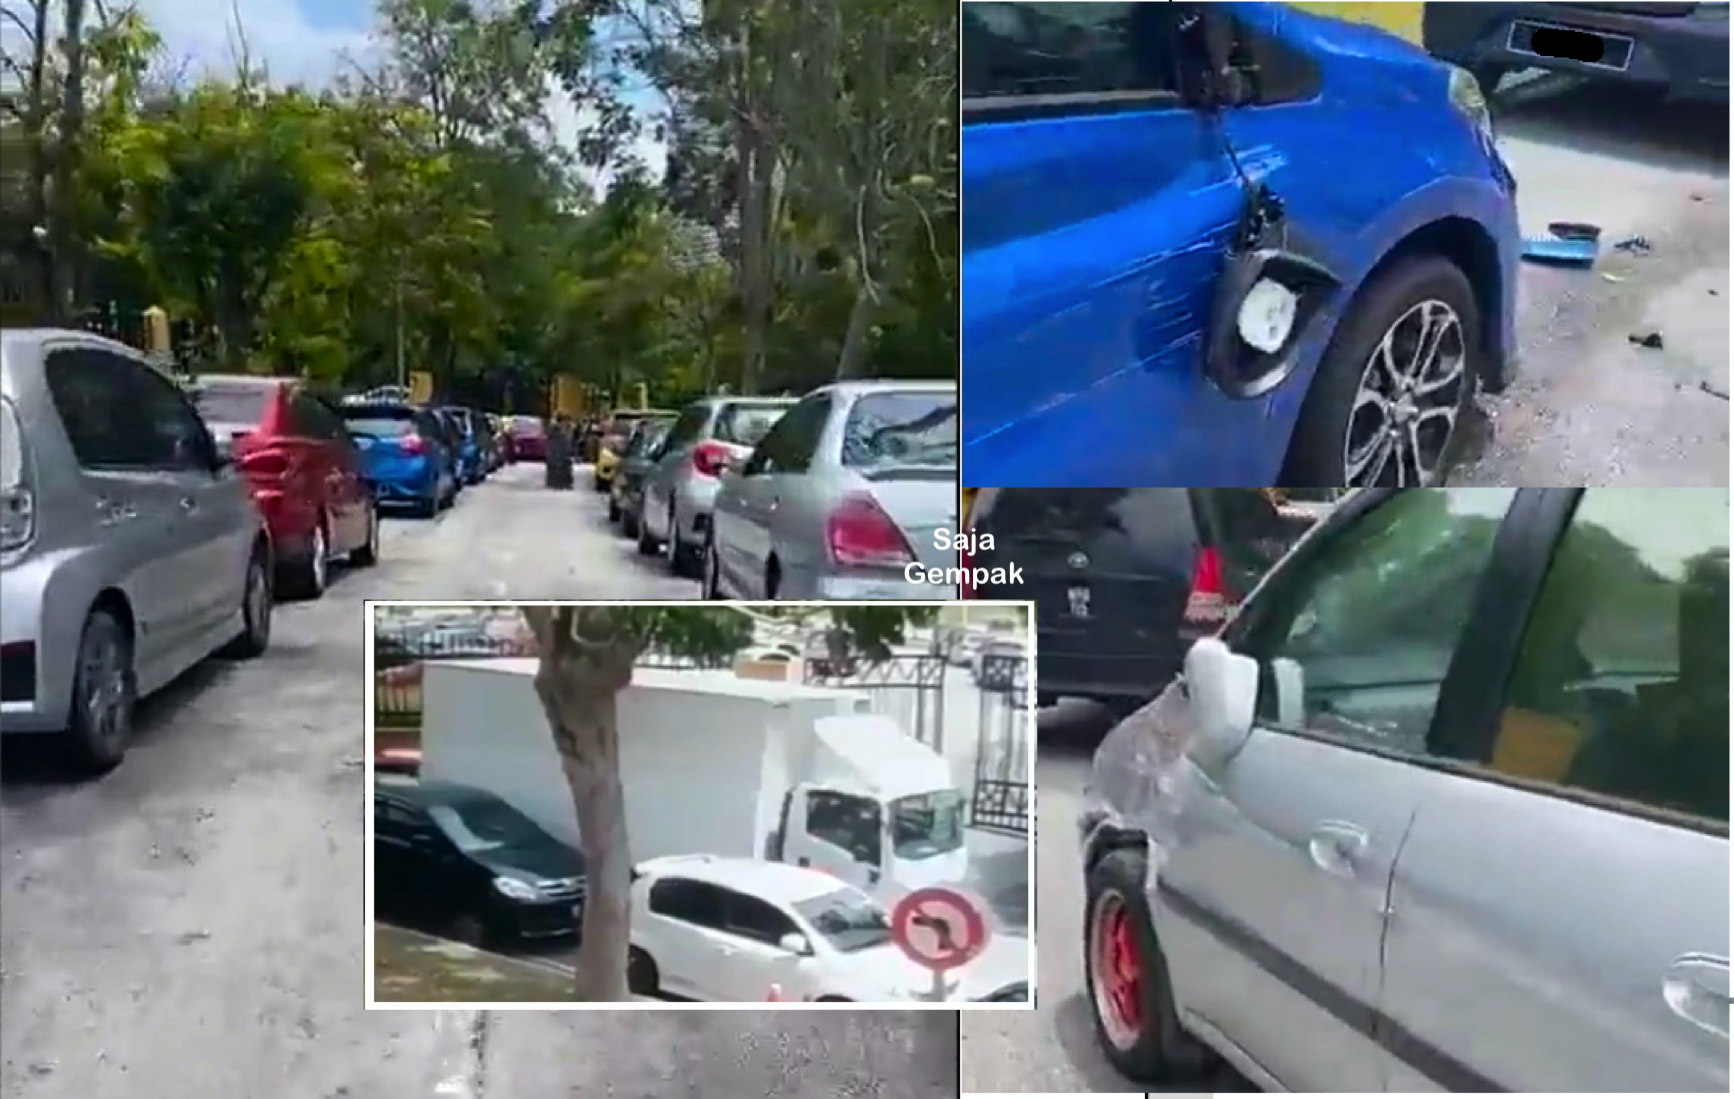 Lebih 10 Kenderaan 'Parking' Di Bahu Jalan Dirempuh Lori Dan Tiada Tuntutan Ganti Rugi Boleh Dilakukan - sajagempak.com